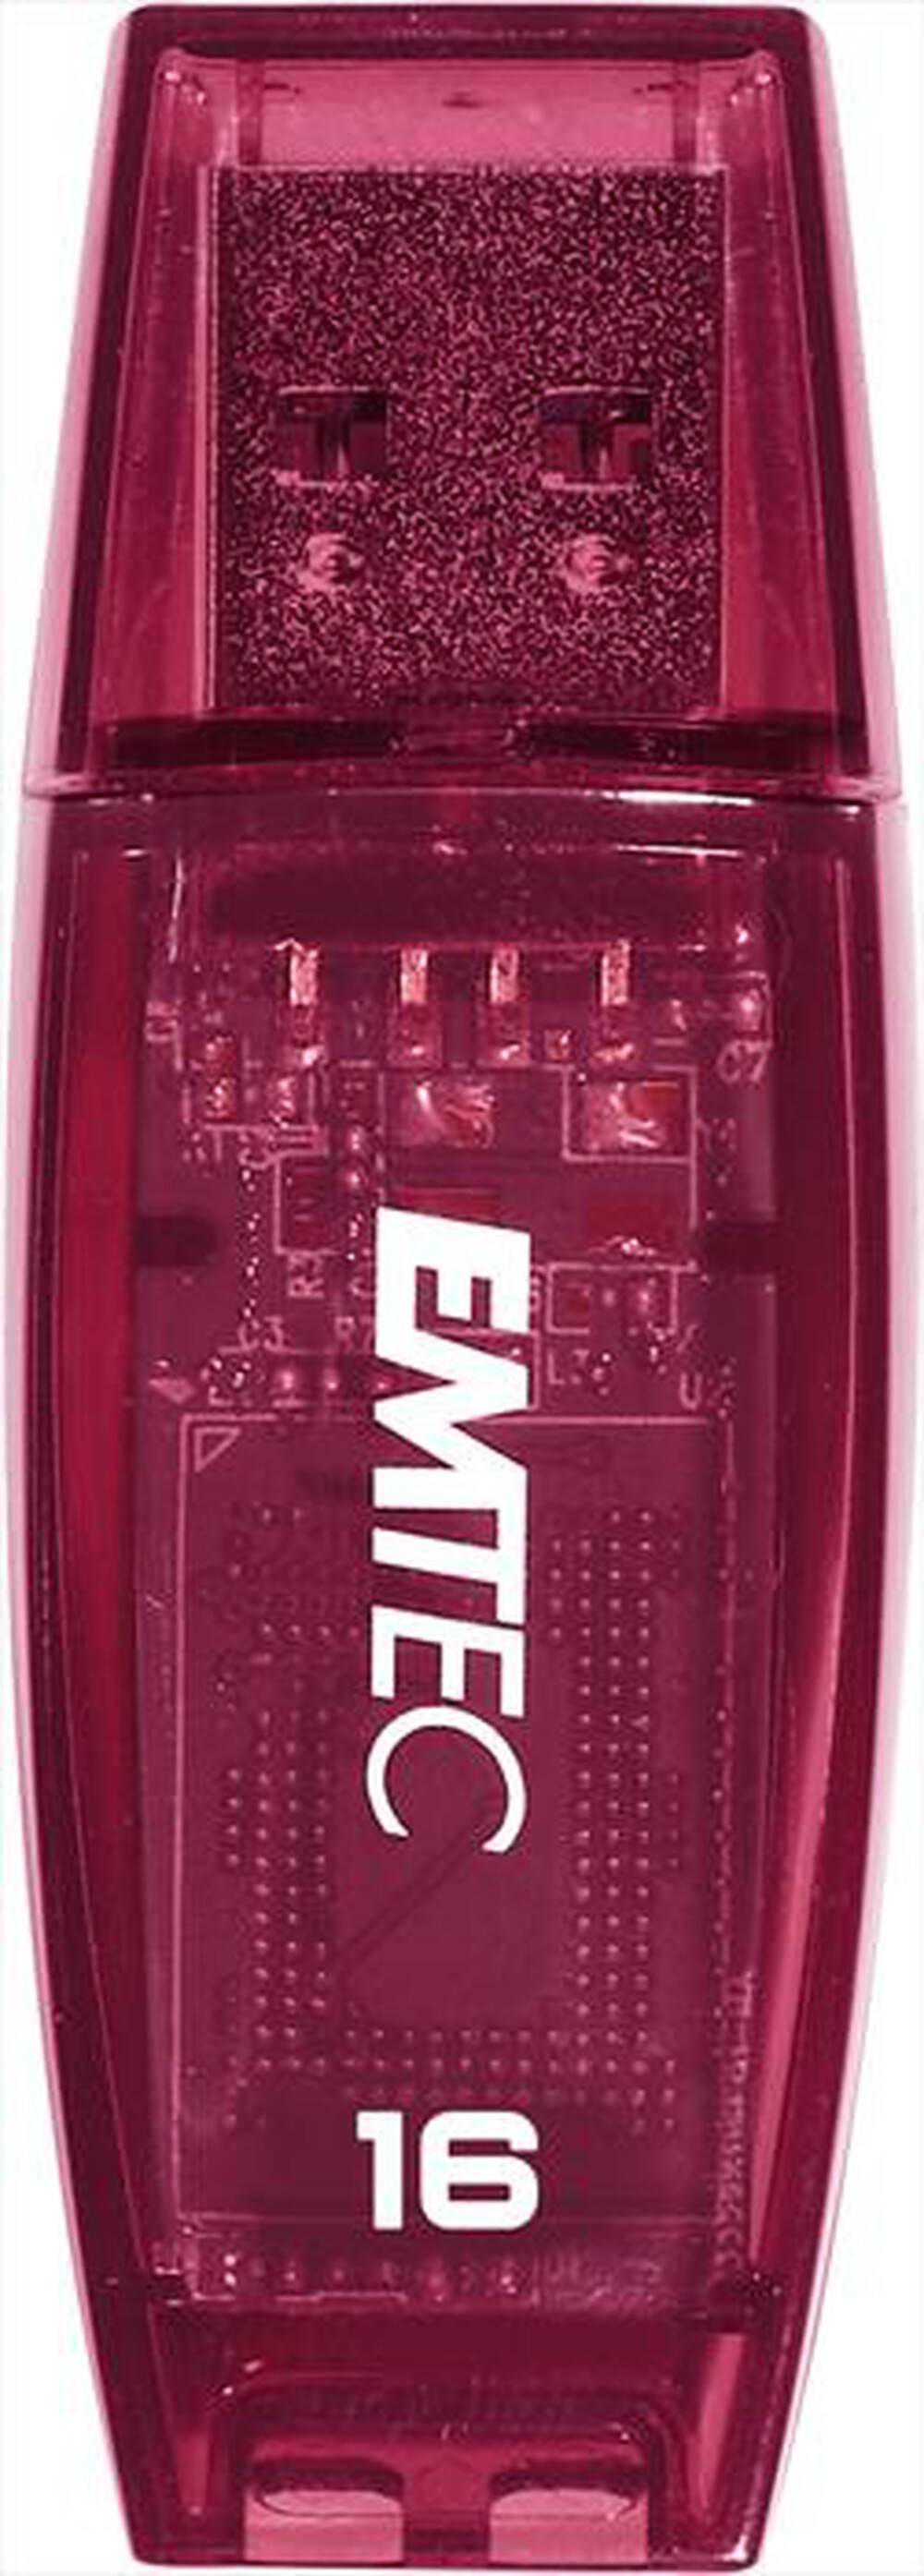 "EMTEC - C410 USB 2.0 8GB-VIOLA"